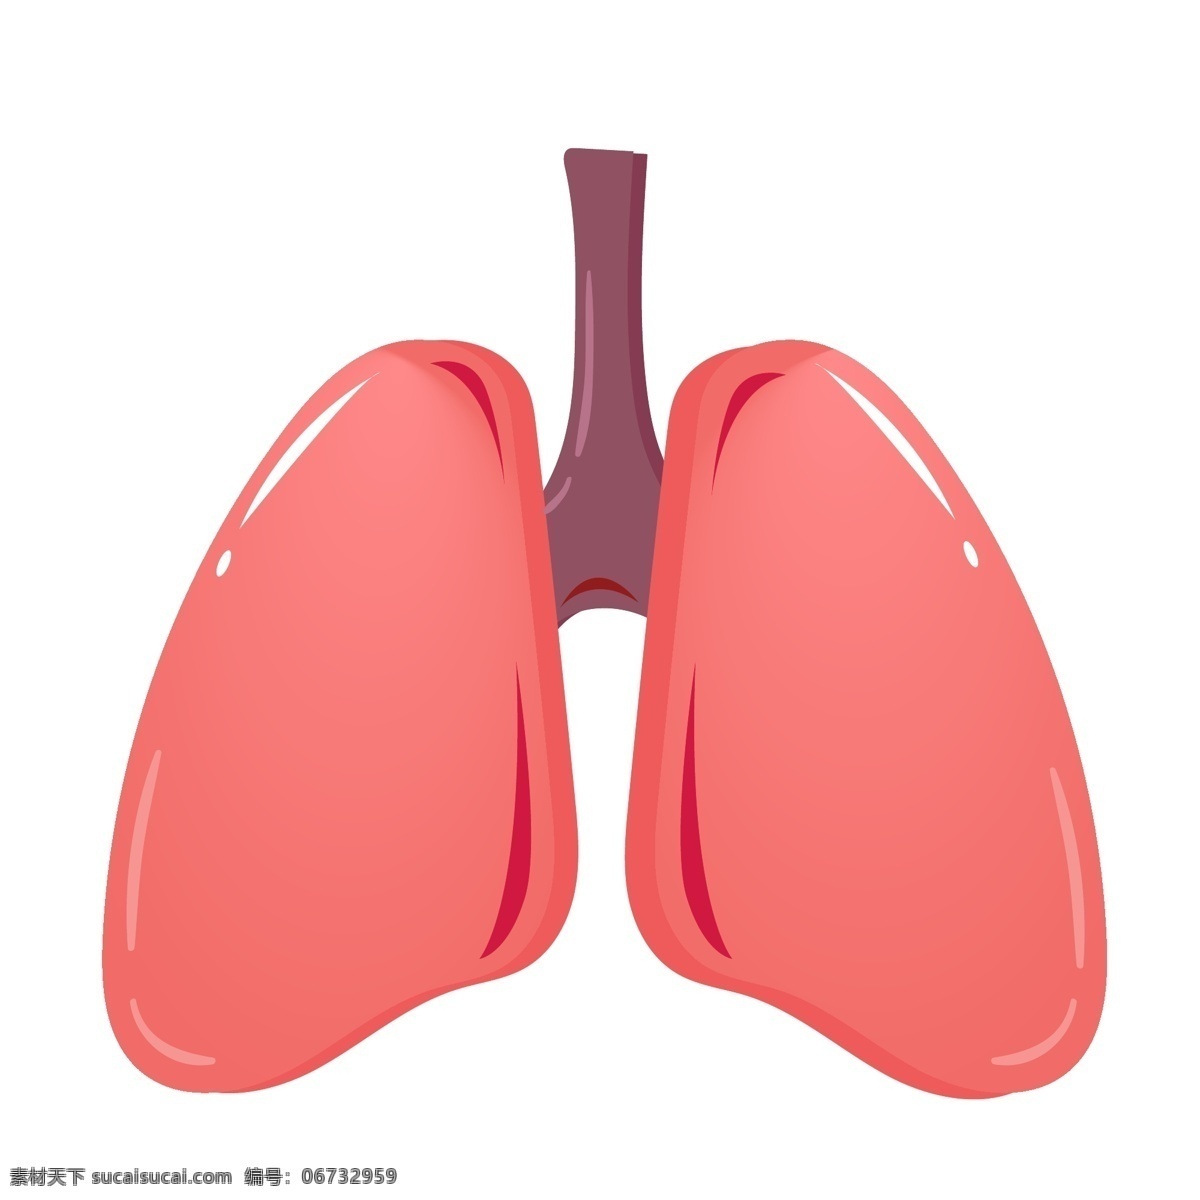 人体器官肺部 内脏 器官 身体